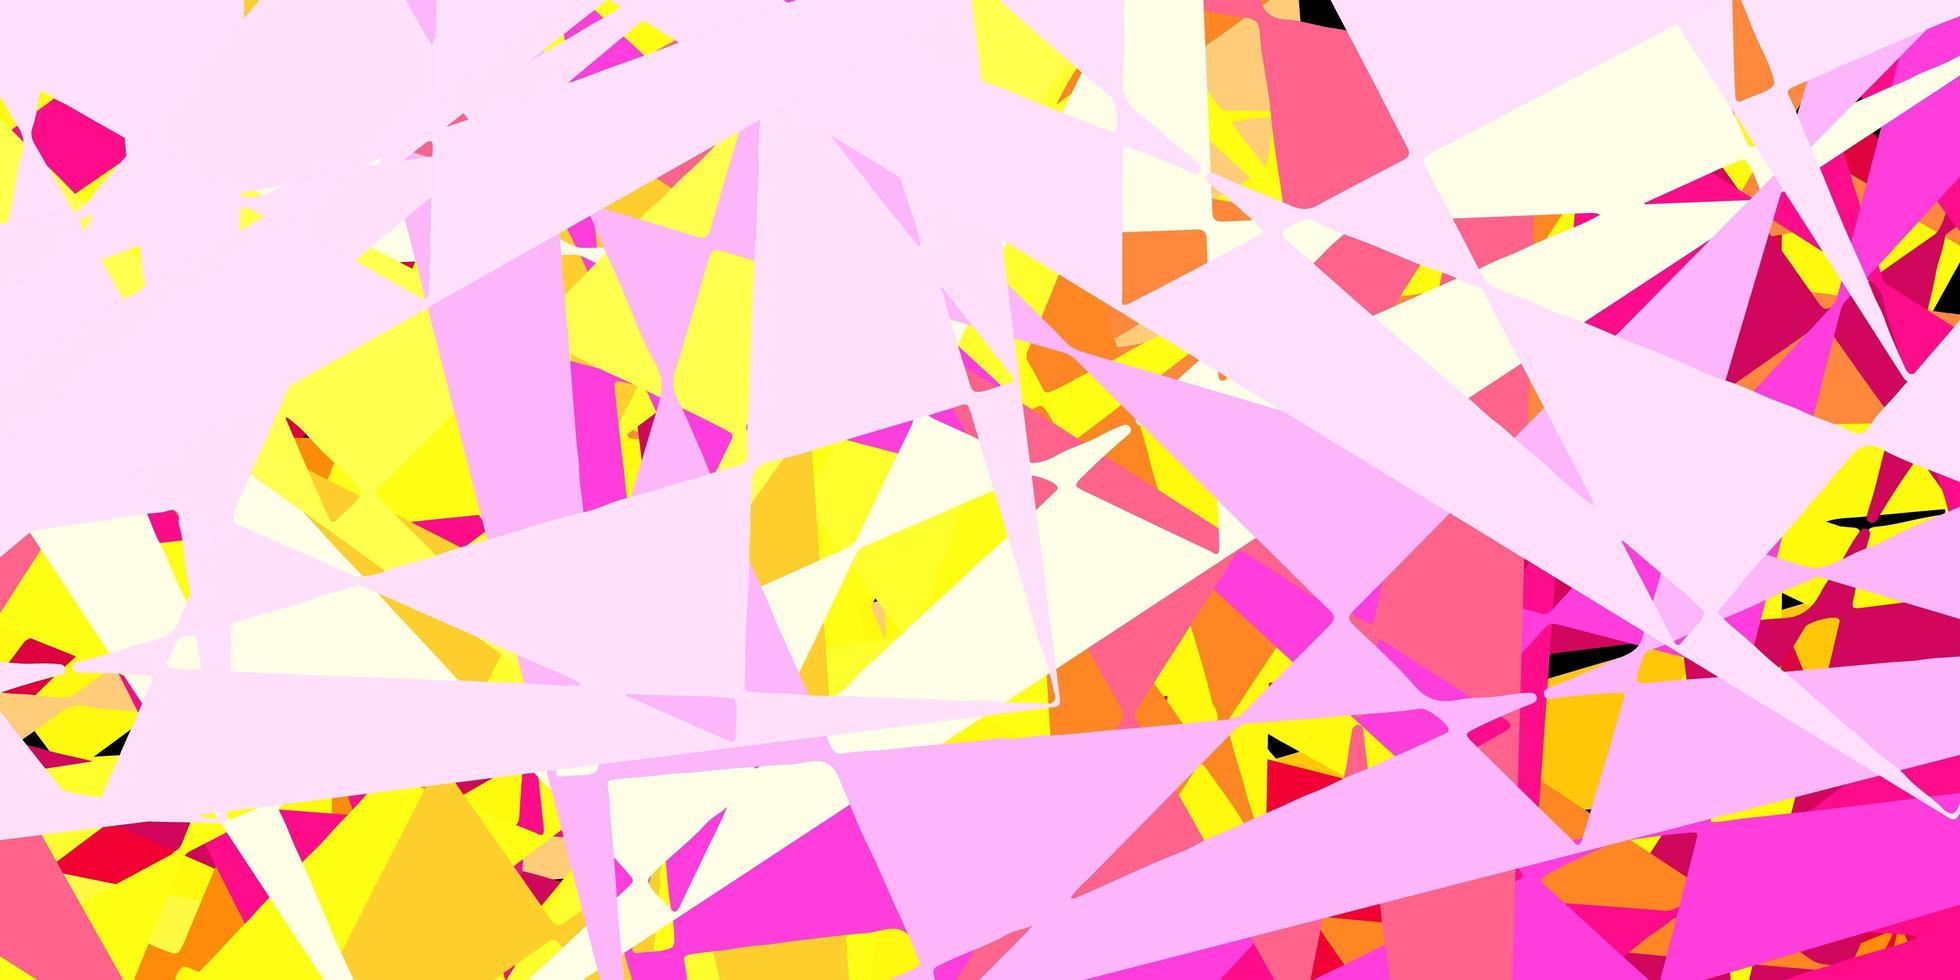 layout de vetor rosa claro e amarelo com formas triangulares.